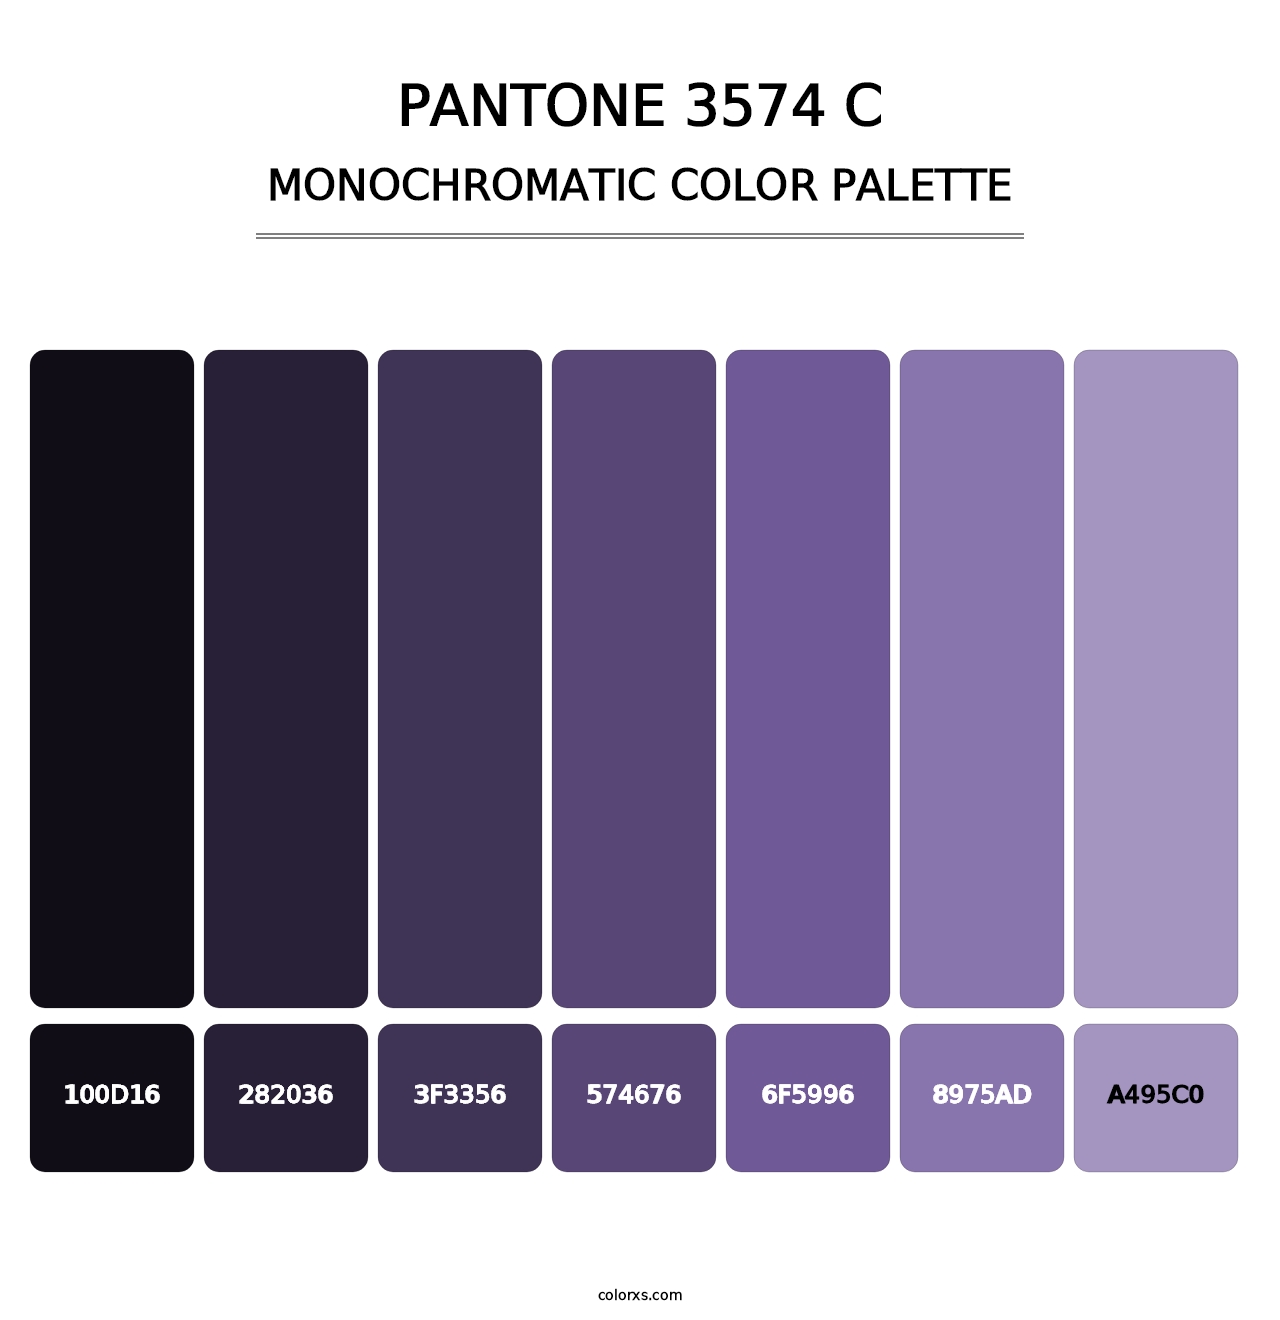 PANTONE 3574 C - Monochromatic Color Palette